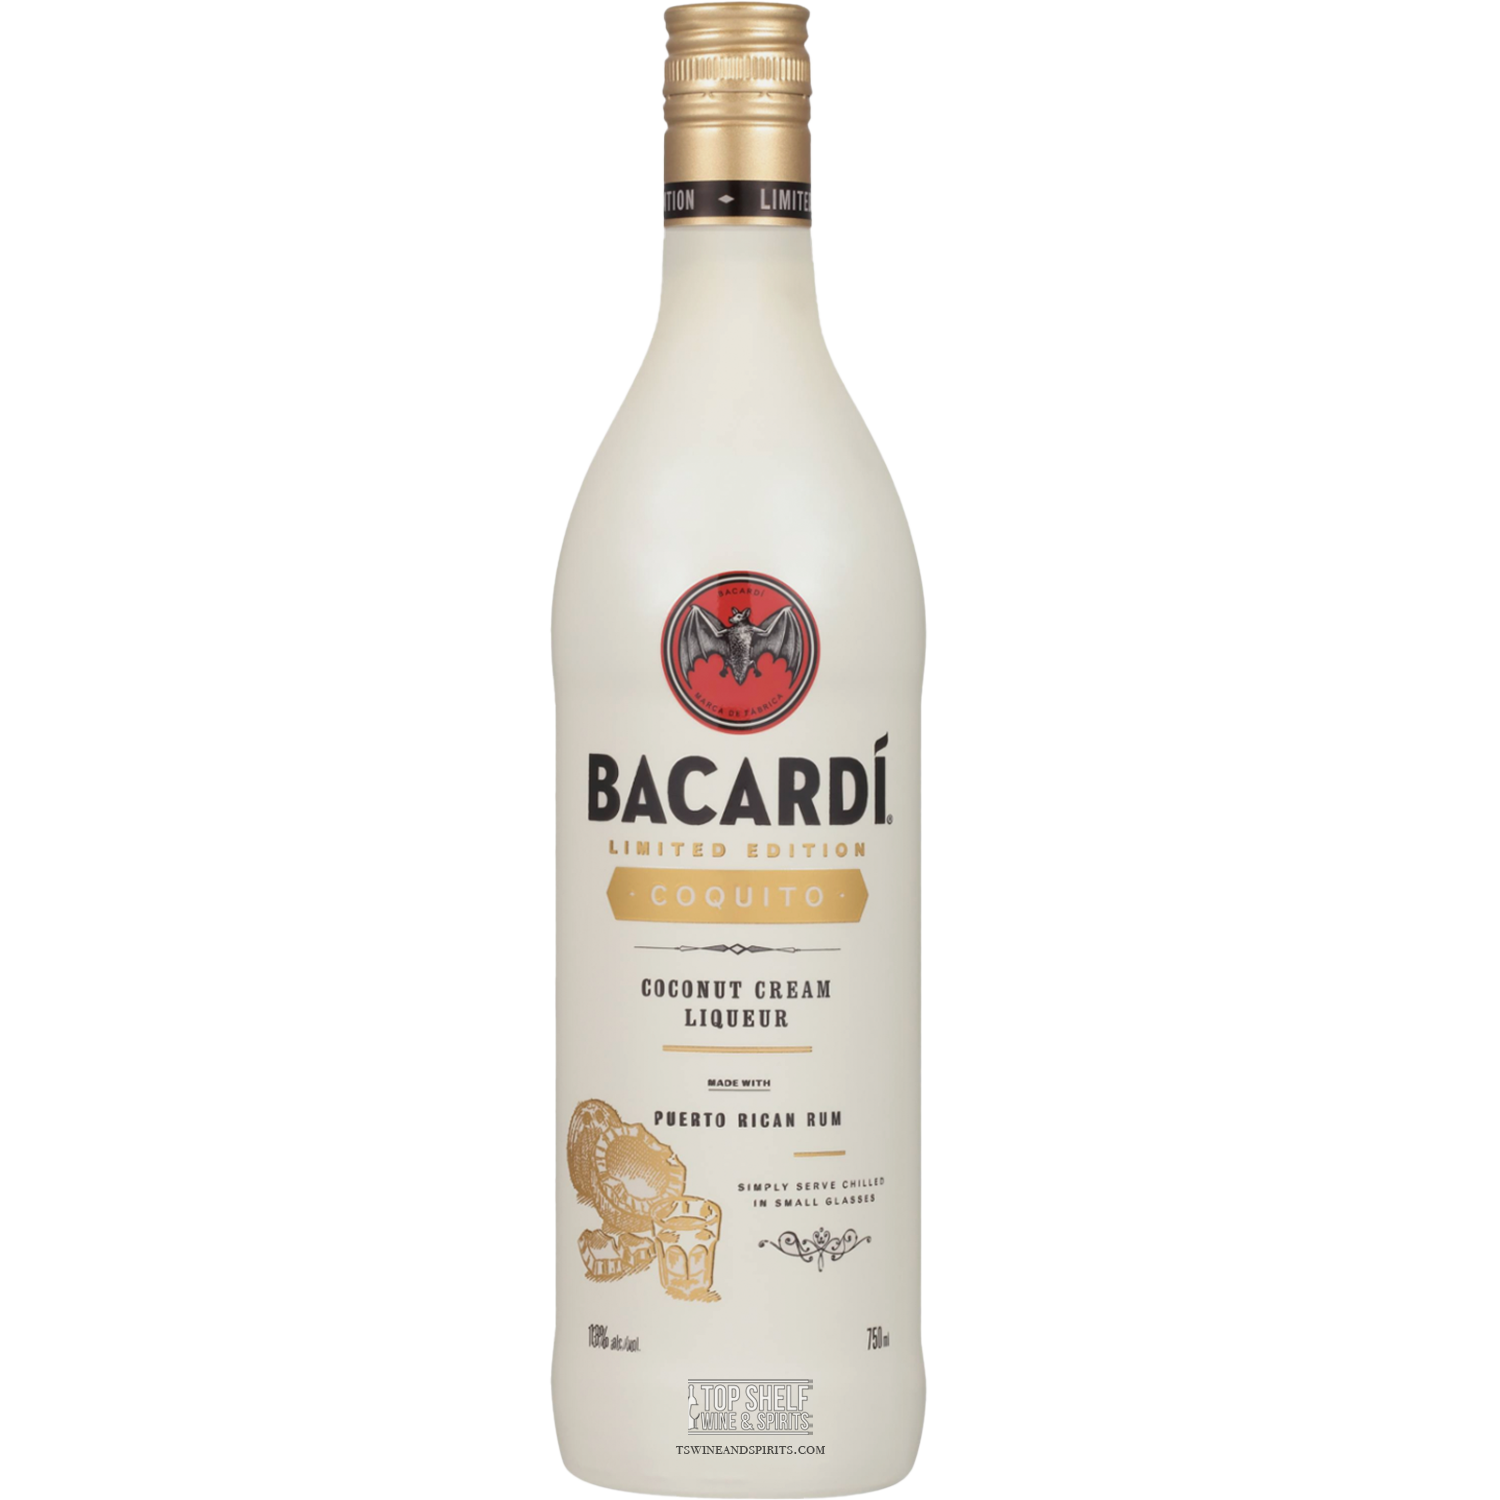 Bacardí Coquito Coconut Cream Liqueur